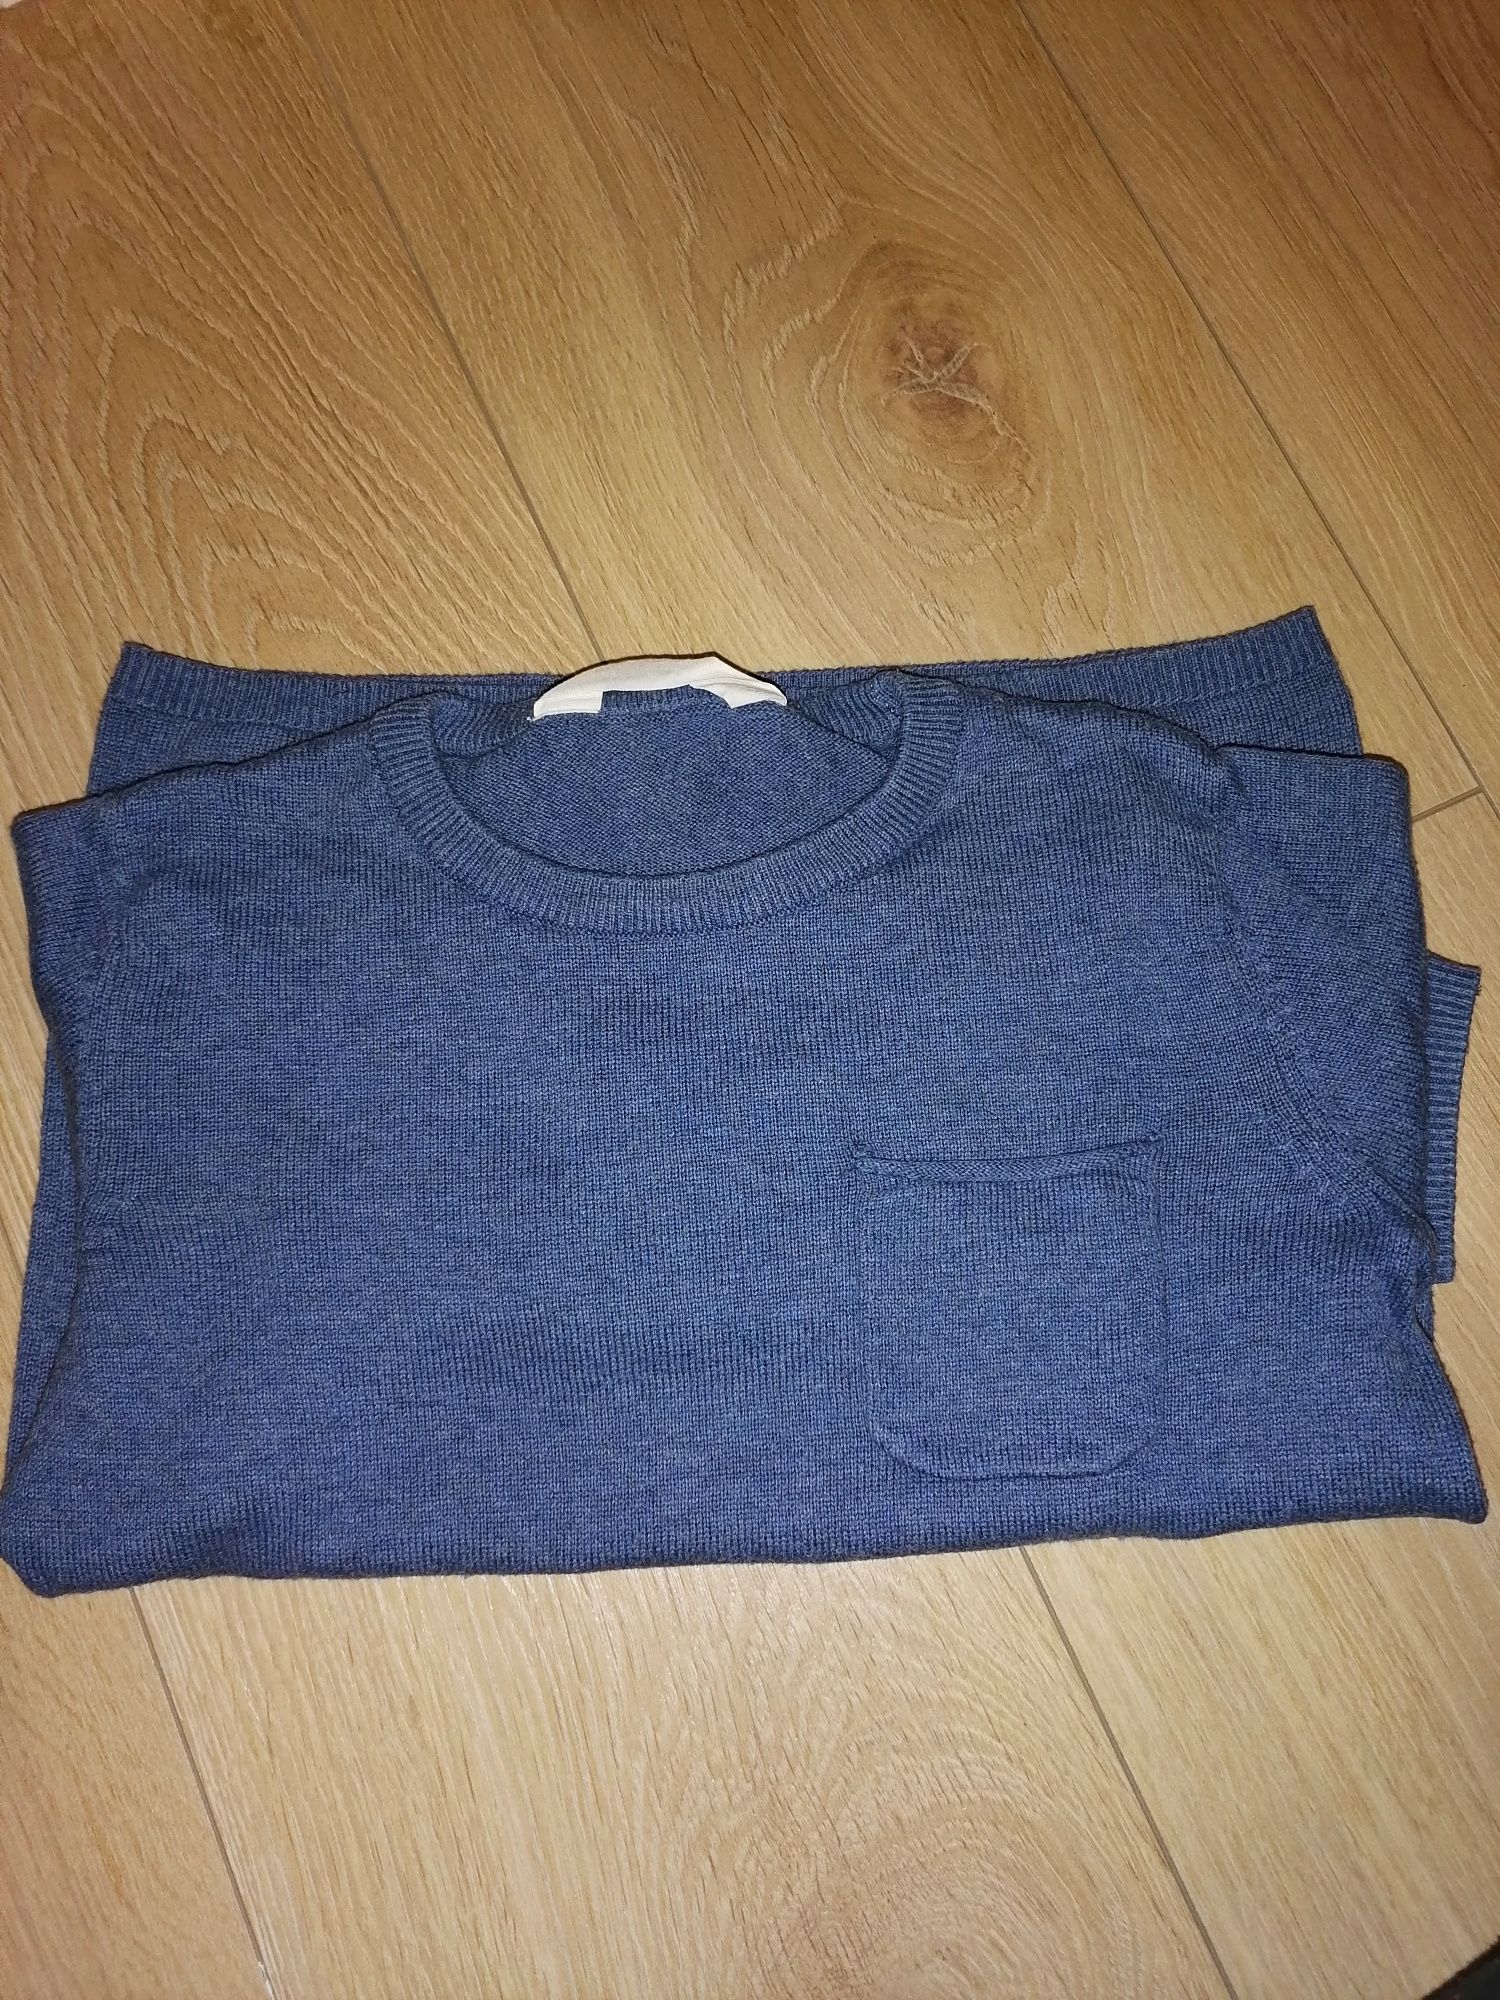 Sweter dla chłopca H&M rozmiar 110/116